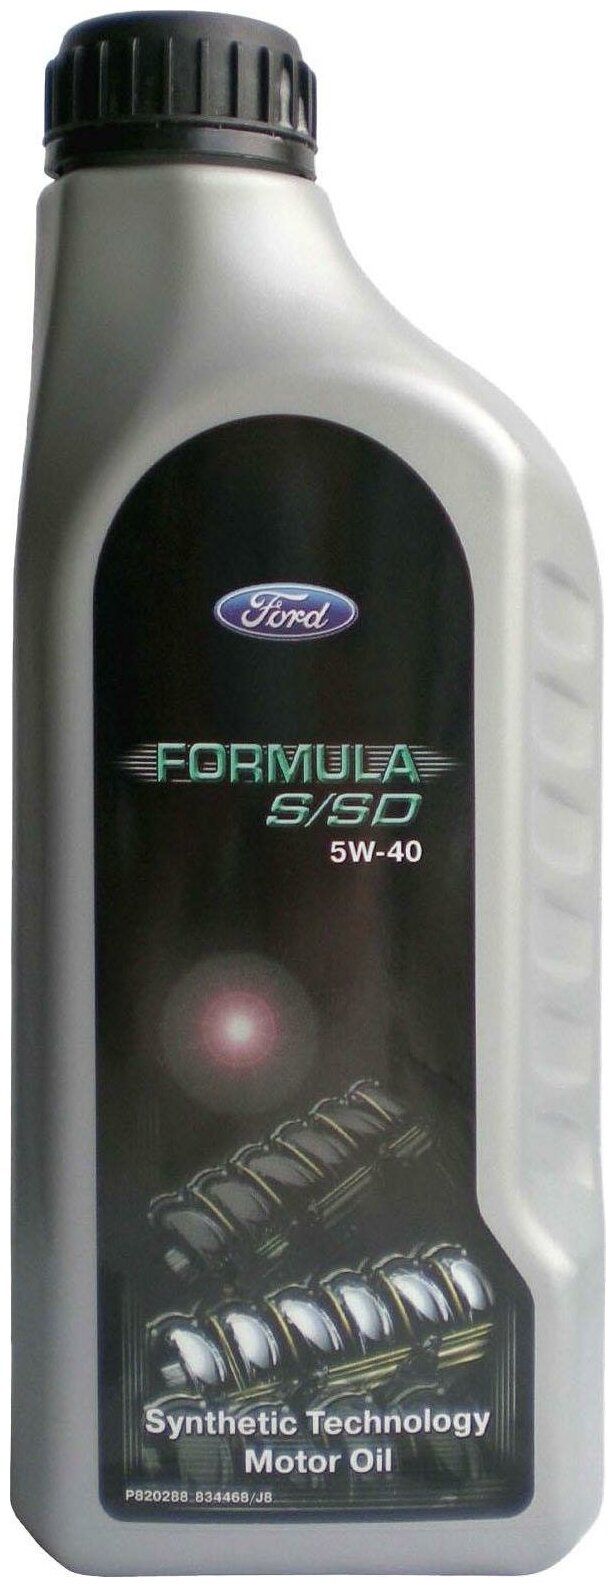 Синтетическое моторное масло Ford Formula S/SD 5W40